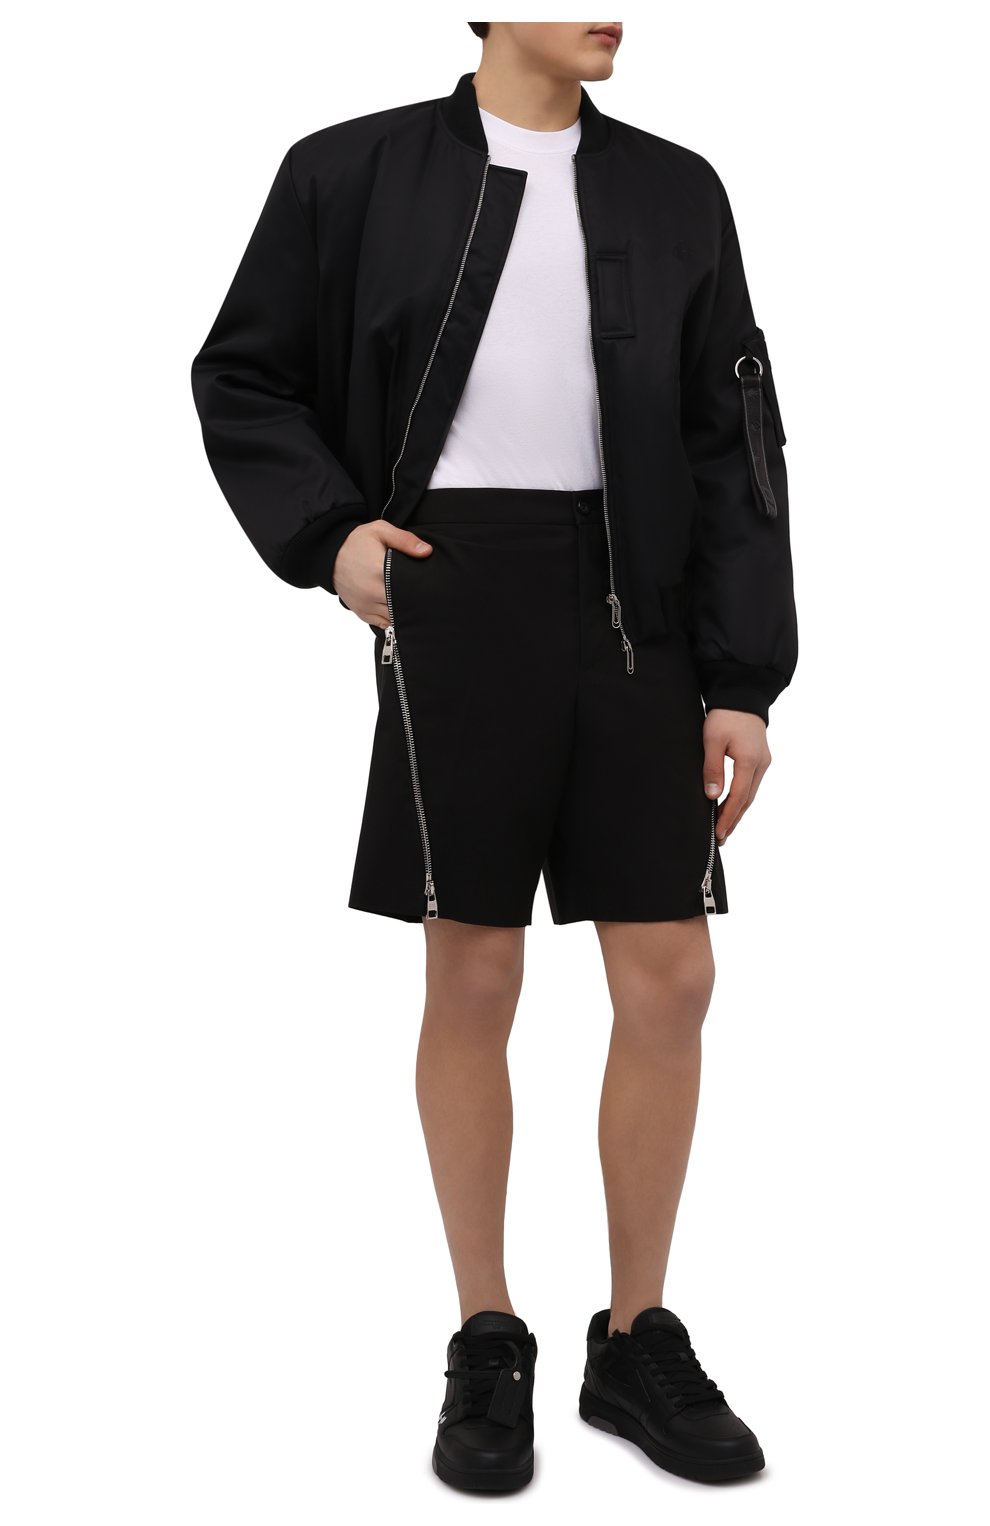 Мужские хлопковые шорты ALEXANDER MCQUEEN черного цвета, арт. 687701/QSS44 | Фото 2 (Длина Шорты М: До колена; Случай: Повседневный; Стили: Гранж; Материал внешний: Хлопок)